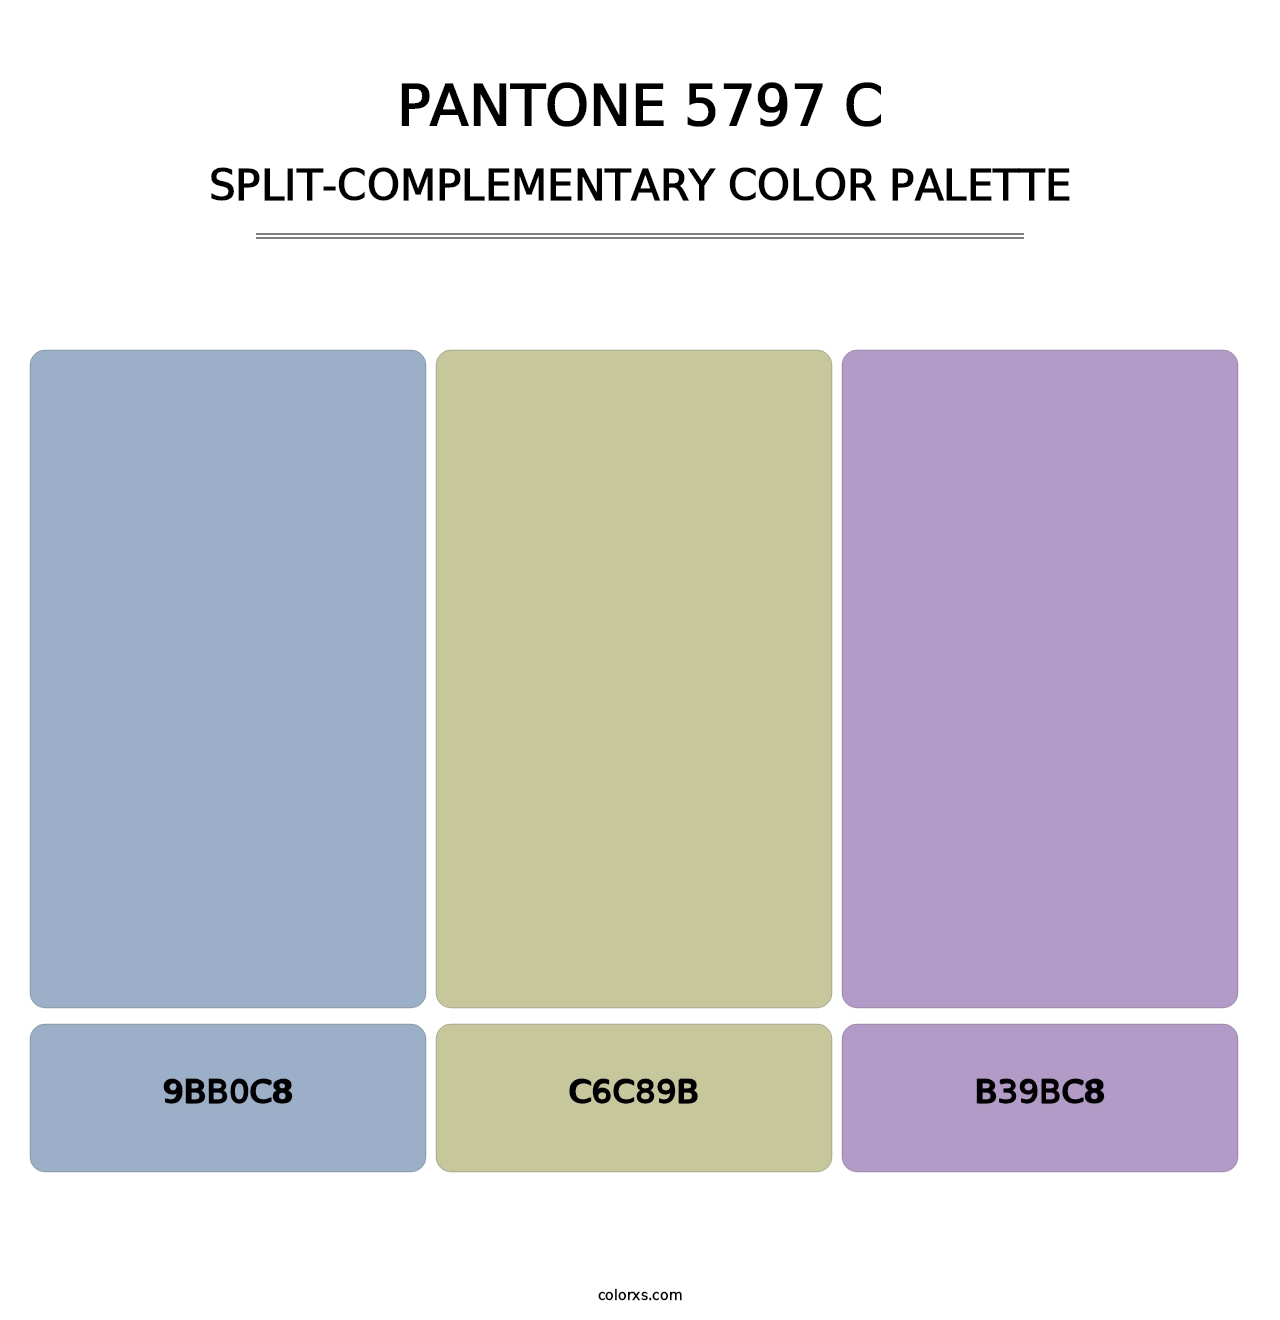 PANTONE 5797 C - Split-Complementary Color Palette